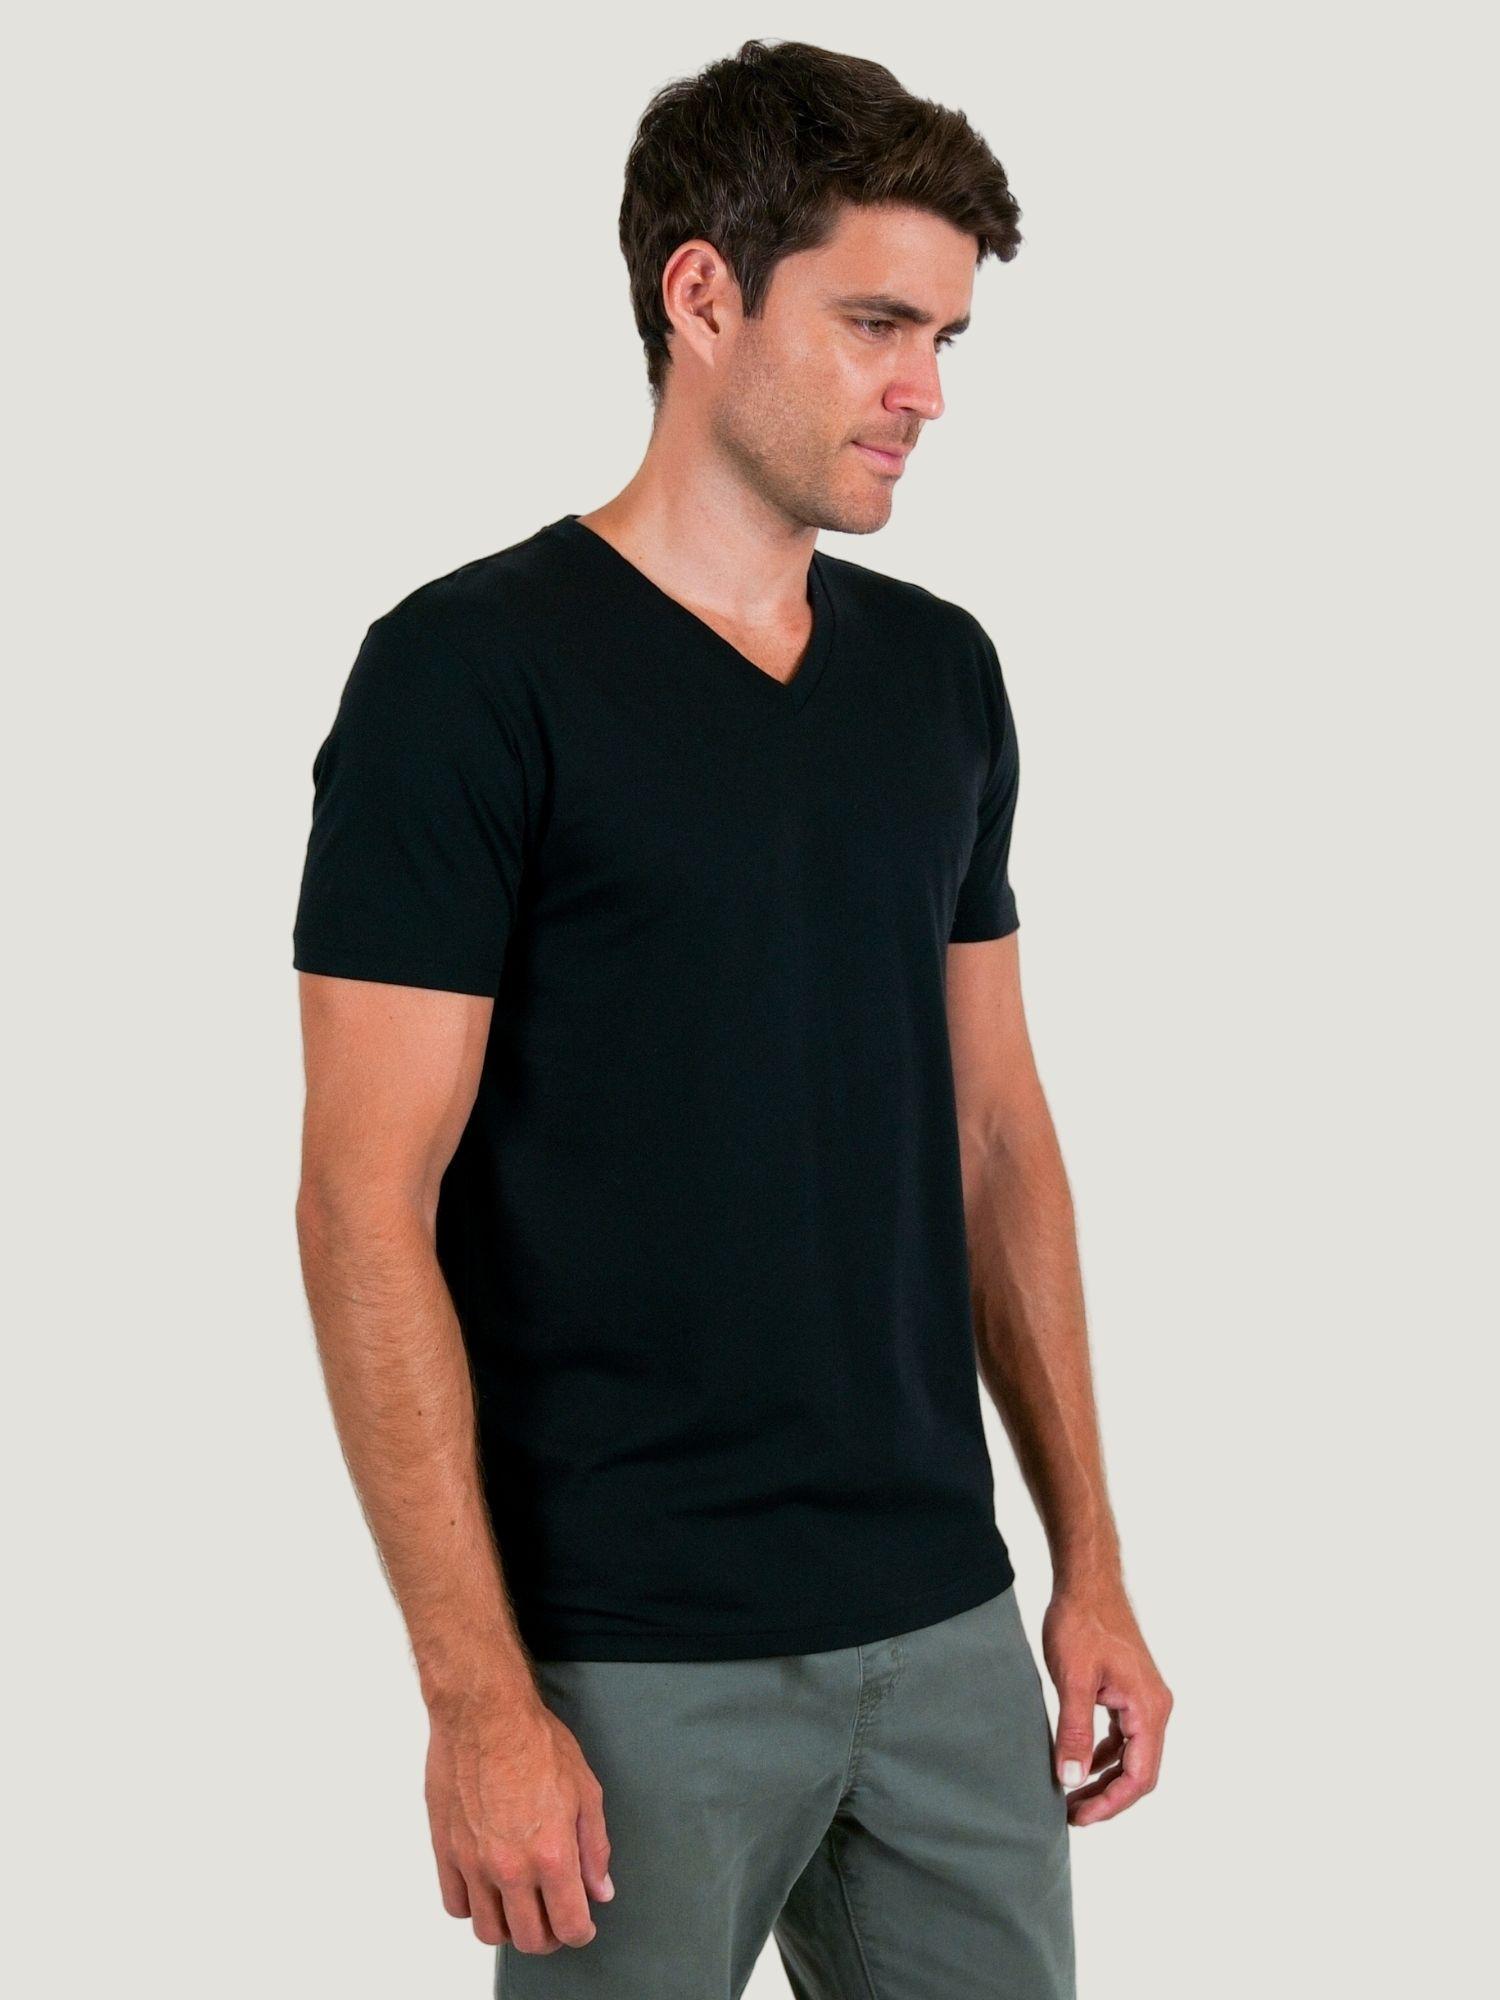 Black V-Neck T-Shirt For Men | Fresh Clean Tees